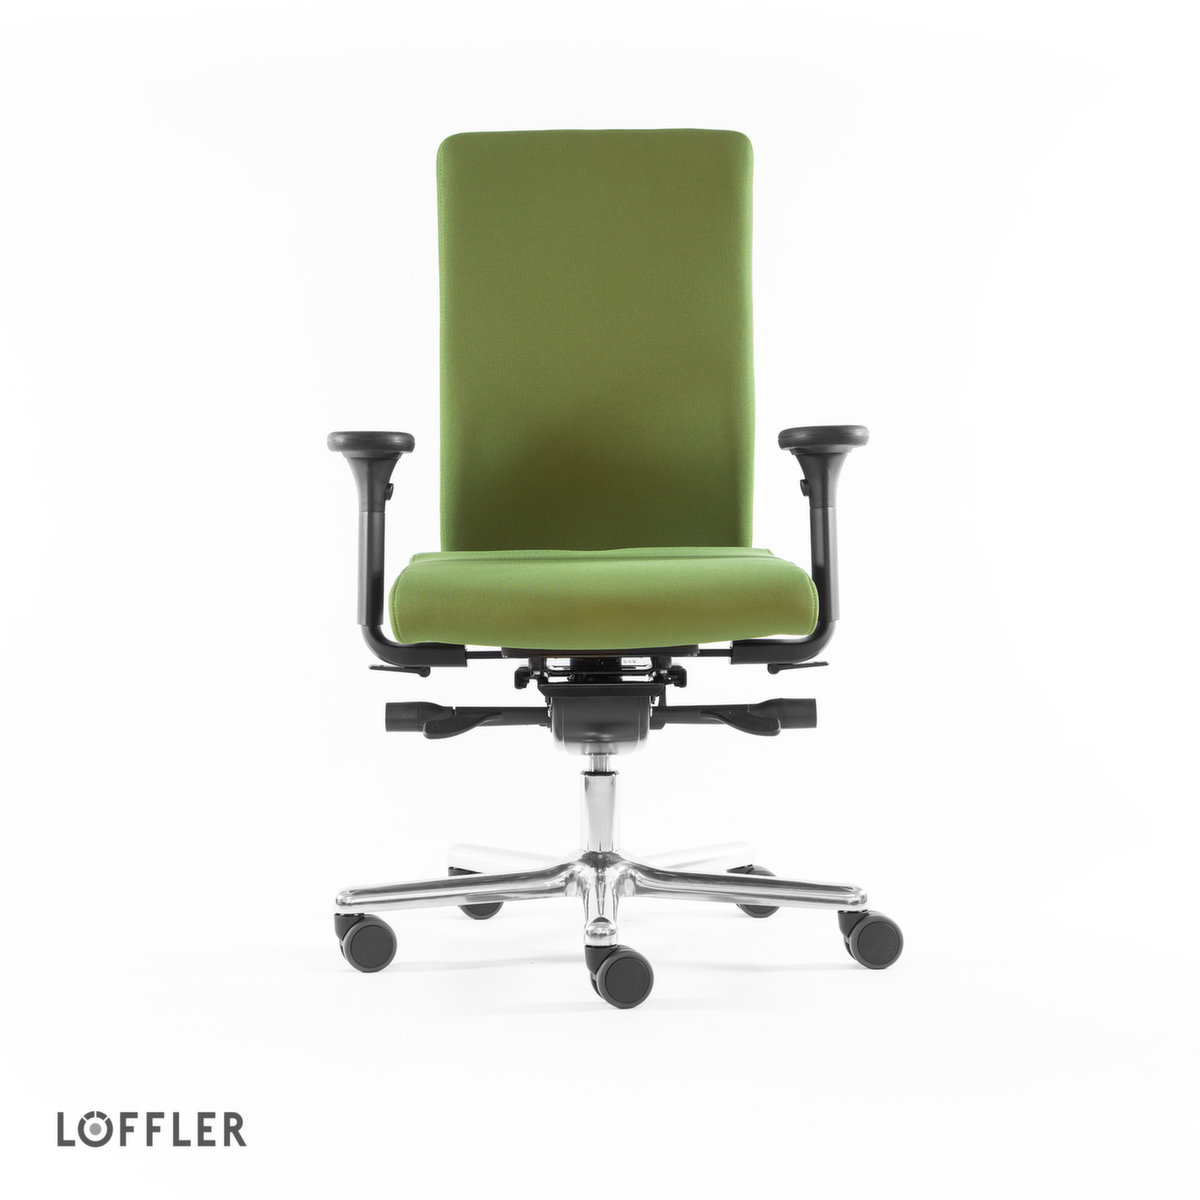 Löffler Bürodrehstuhl mit Taschenfederkern-Sitz, grün Standard 2 ZOOM